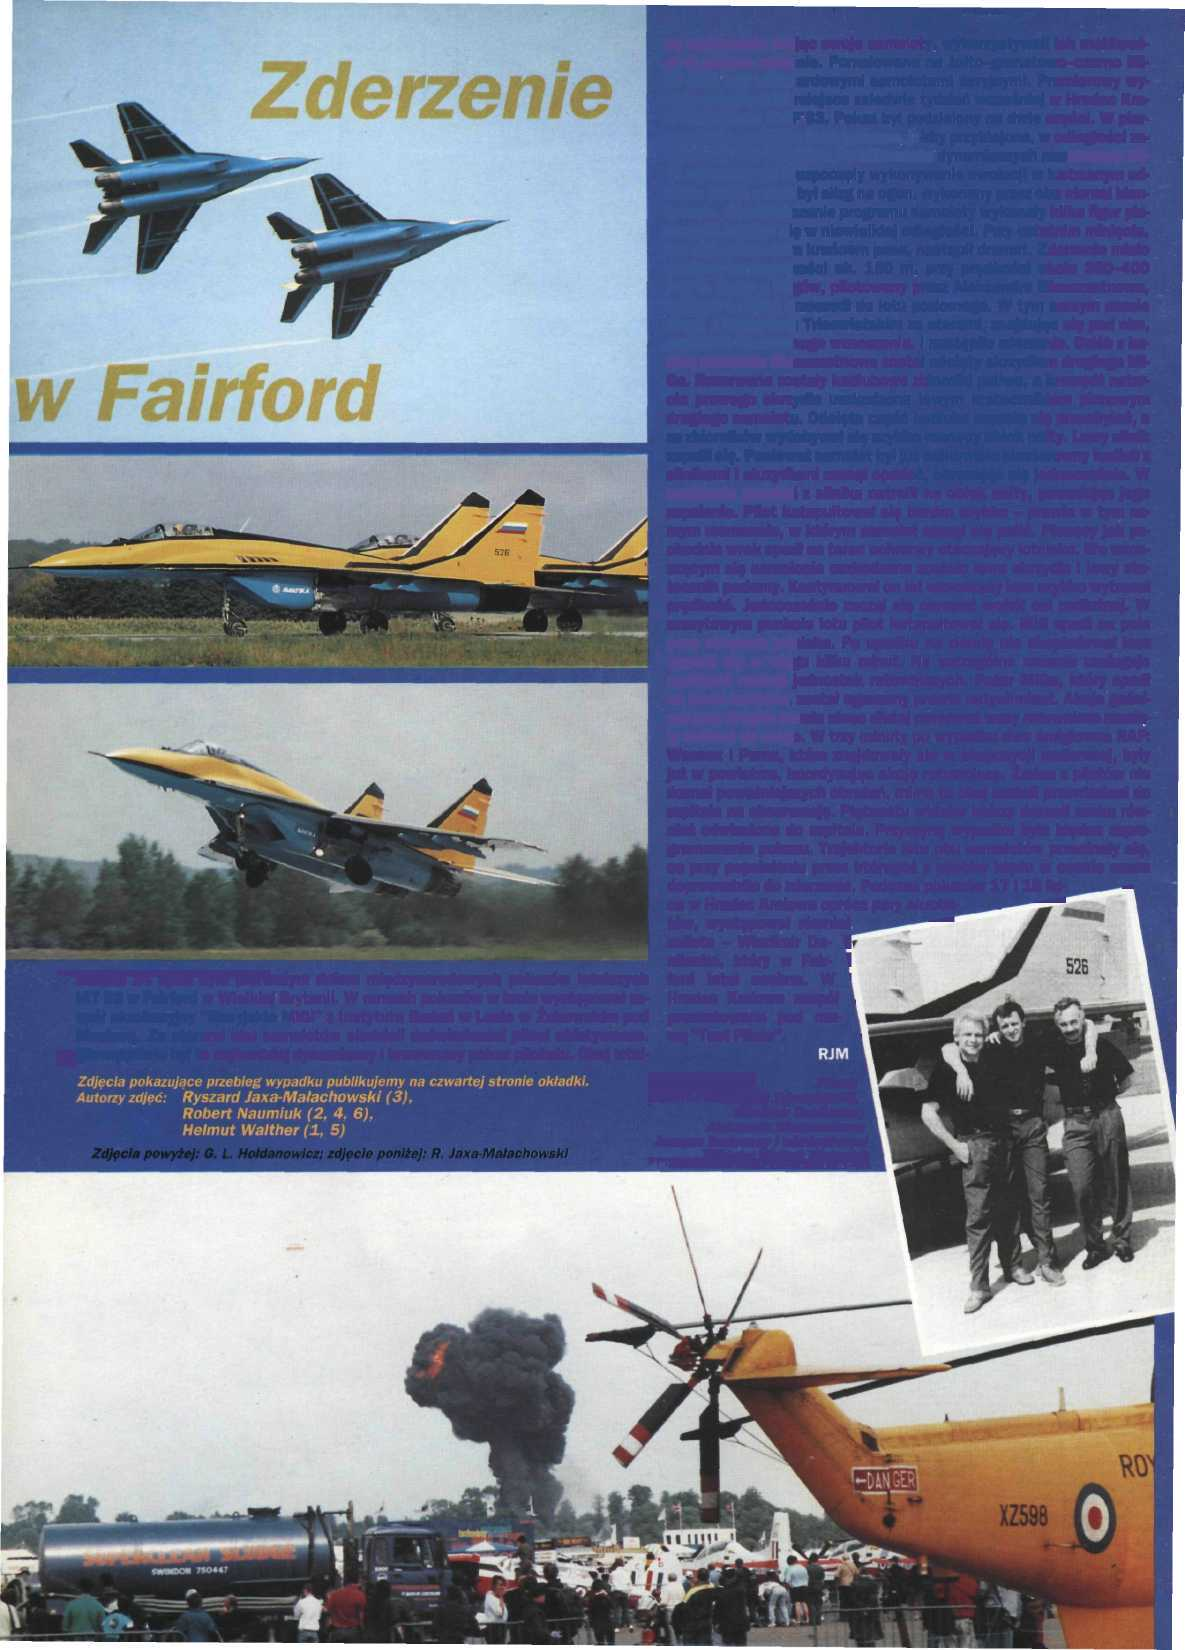 Sobota 24 lipca była pierwszym dniem międzynarodowych pokazów lotniczych IAT 93 w Fairford w Wielkiej Brytanii.